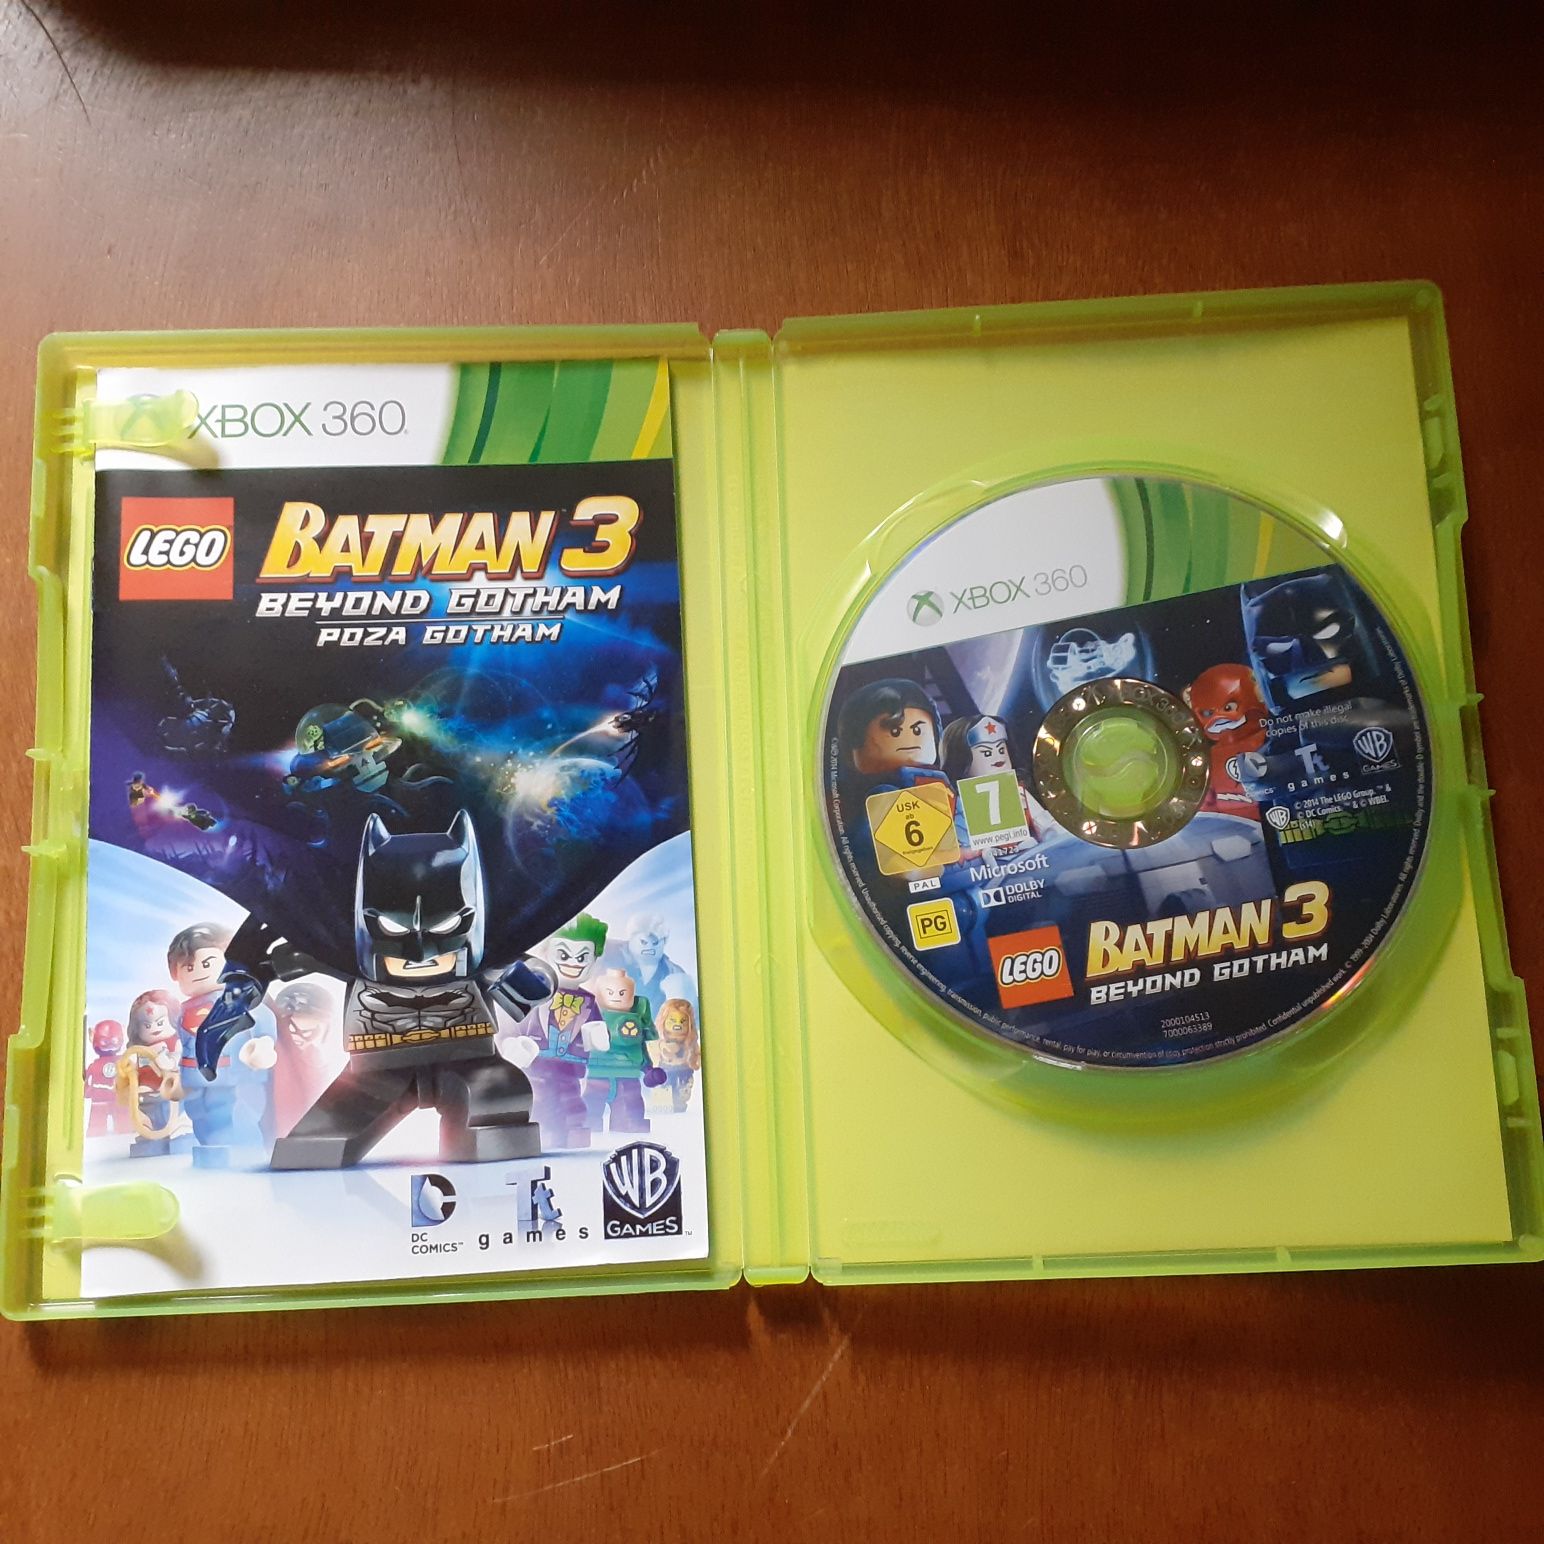 Lego Batman 3 Poza Gotham Xbox 360 Polska wersja!!!